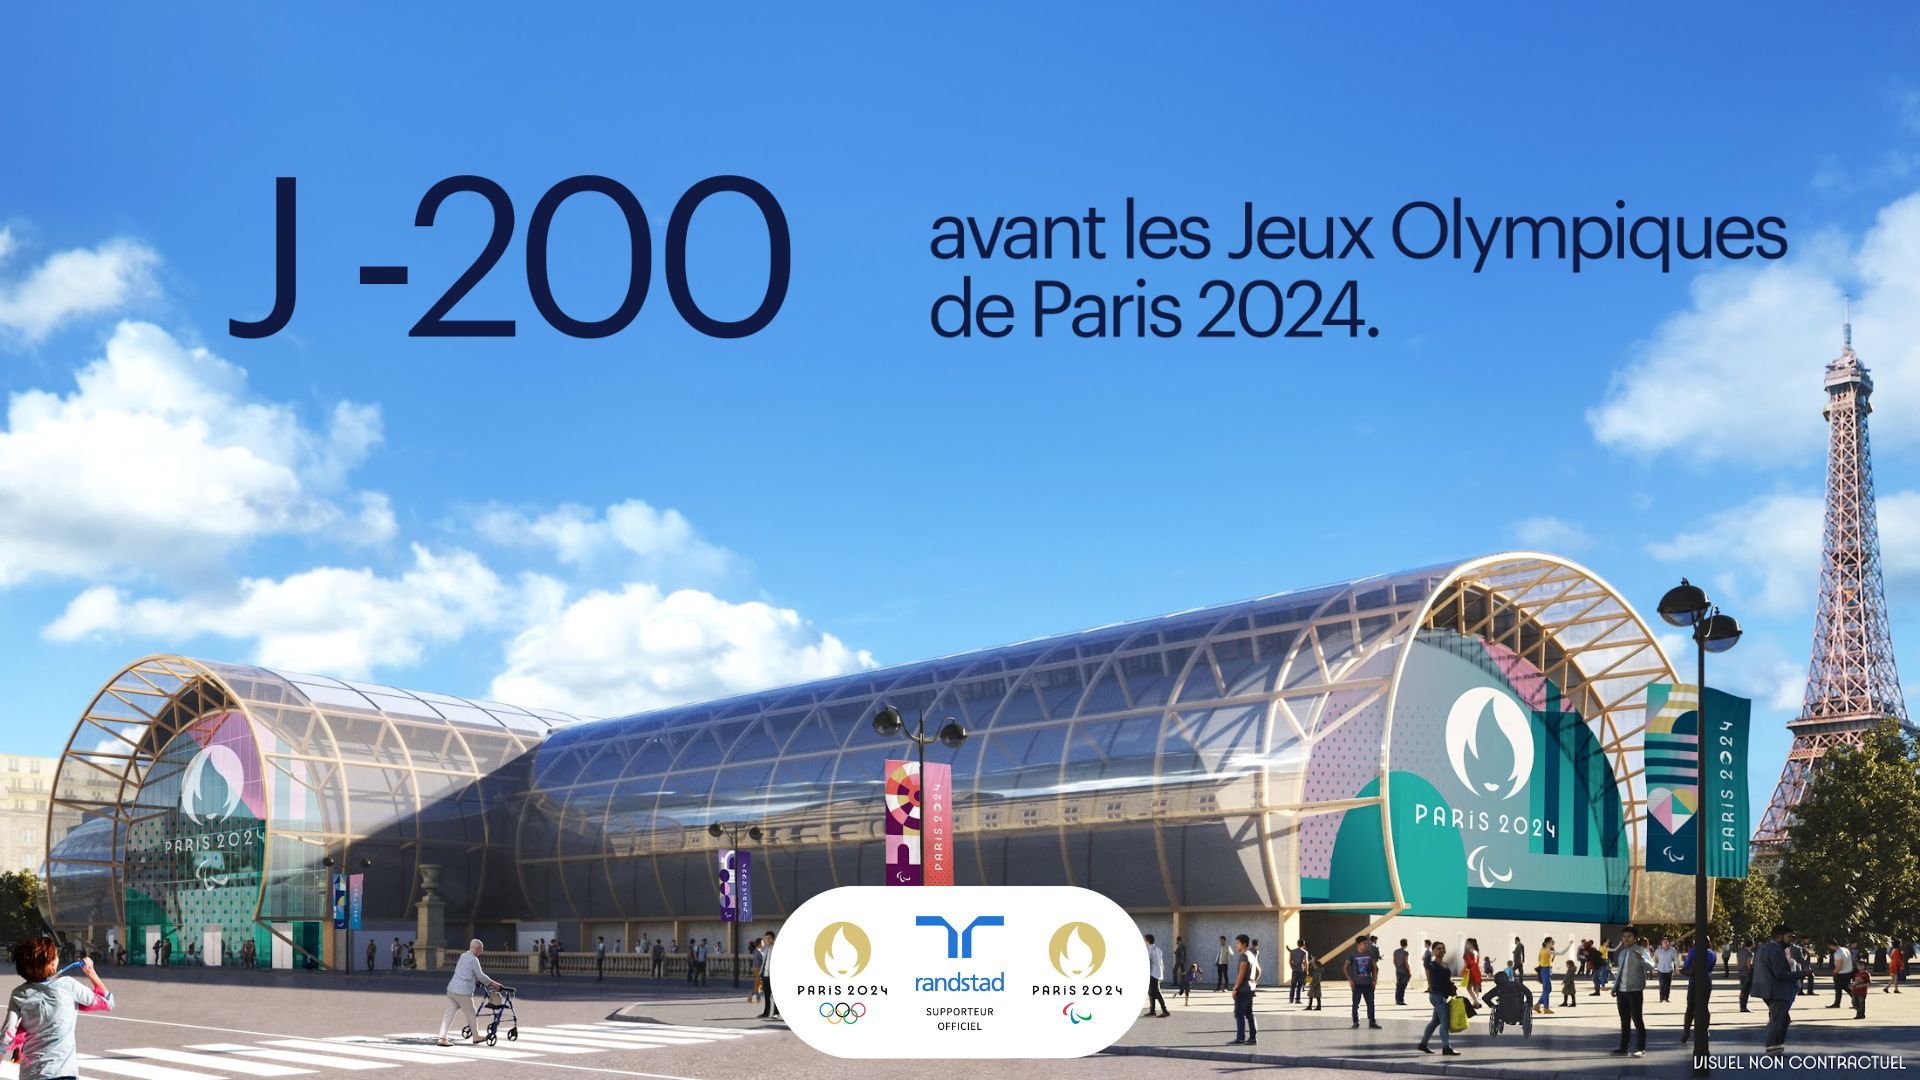 J-200 avant les Jeux Olympiques de Paris 2024